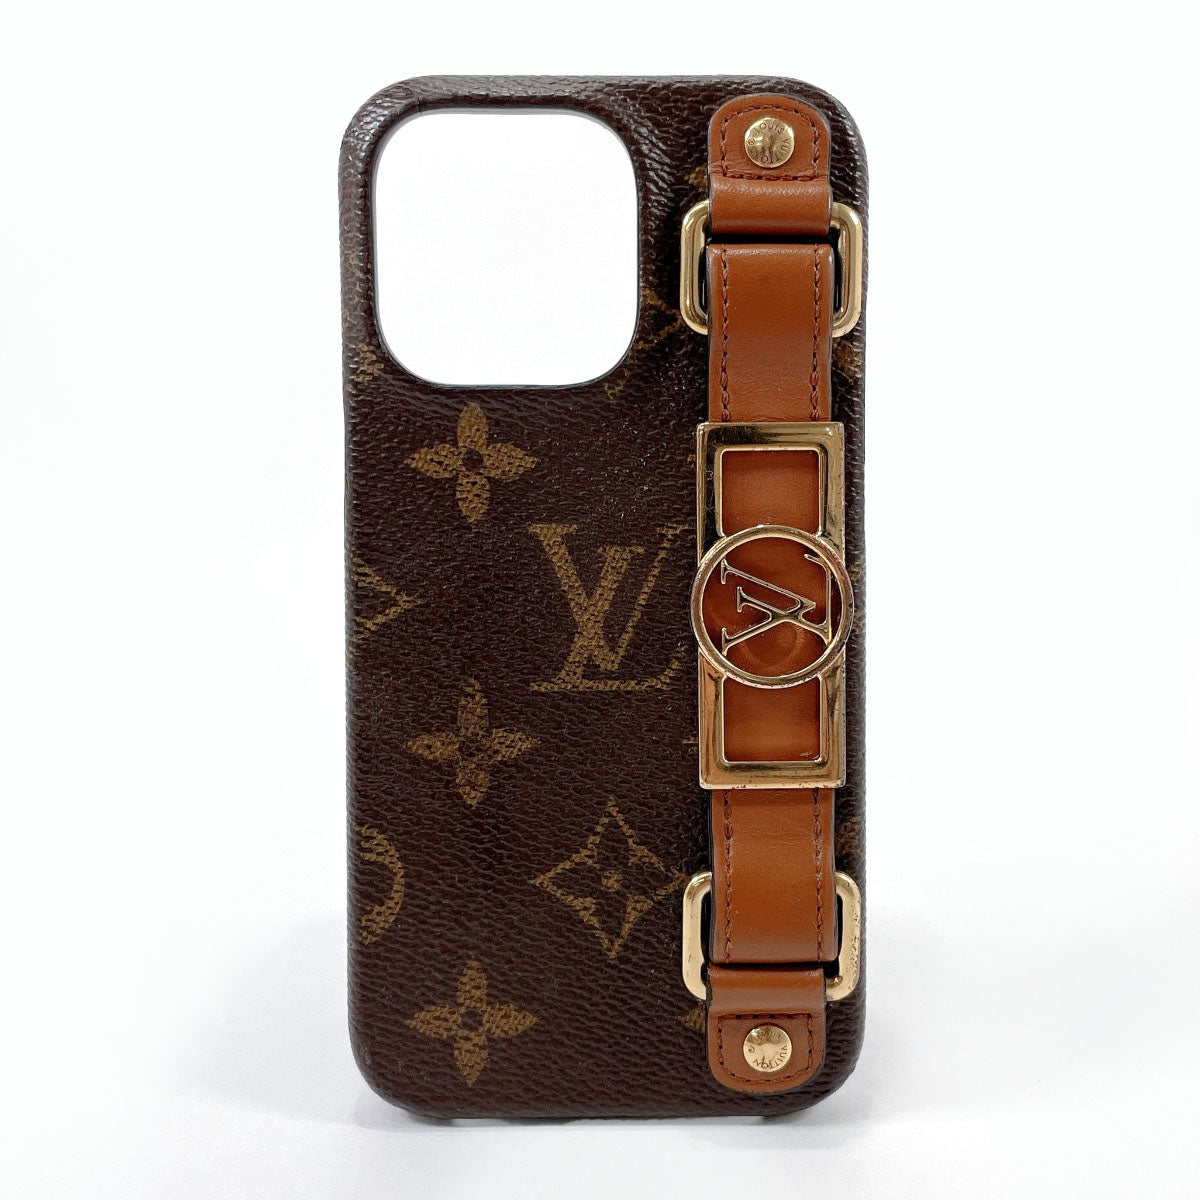 Classic Black Louis Vuitton X Supreme iPhone 13 Pro Case